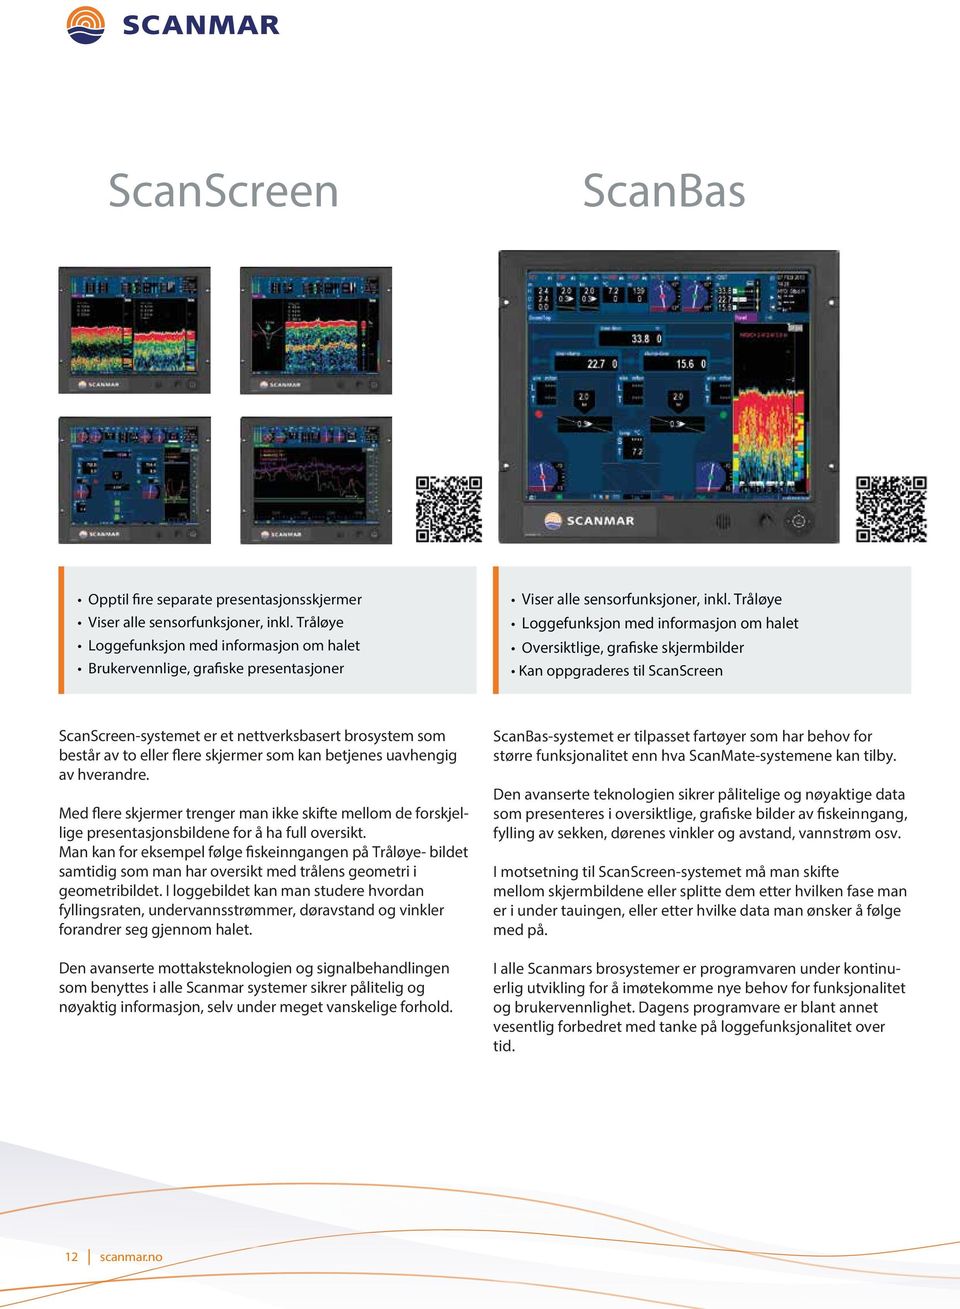 Tråløye Loggefunksjon med informasjon om halet Oversiktlige, grafiske skjermbilder Kan oppgraderes til ScanScreen ScanScreen-systemet er et nettverksbasert brosystem som består av to eller flere